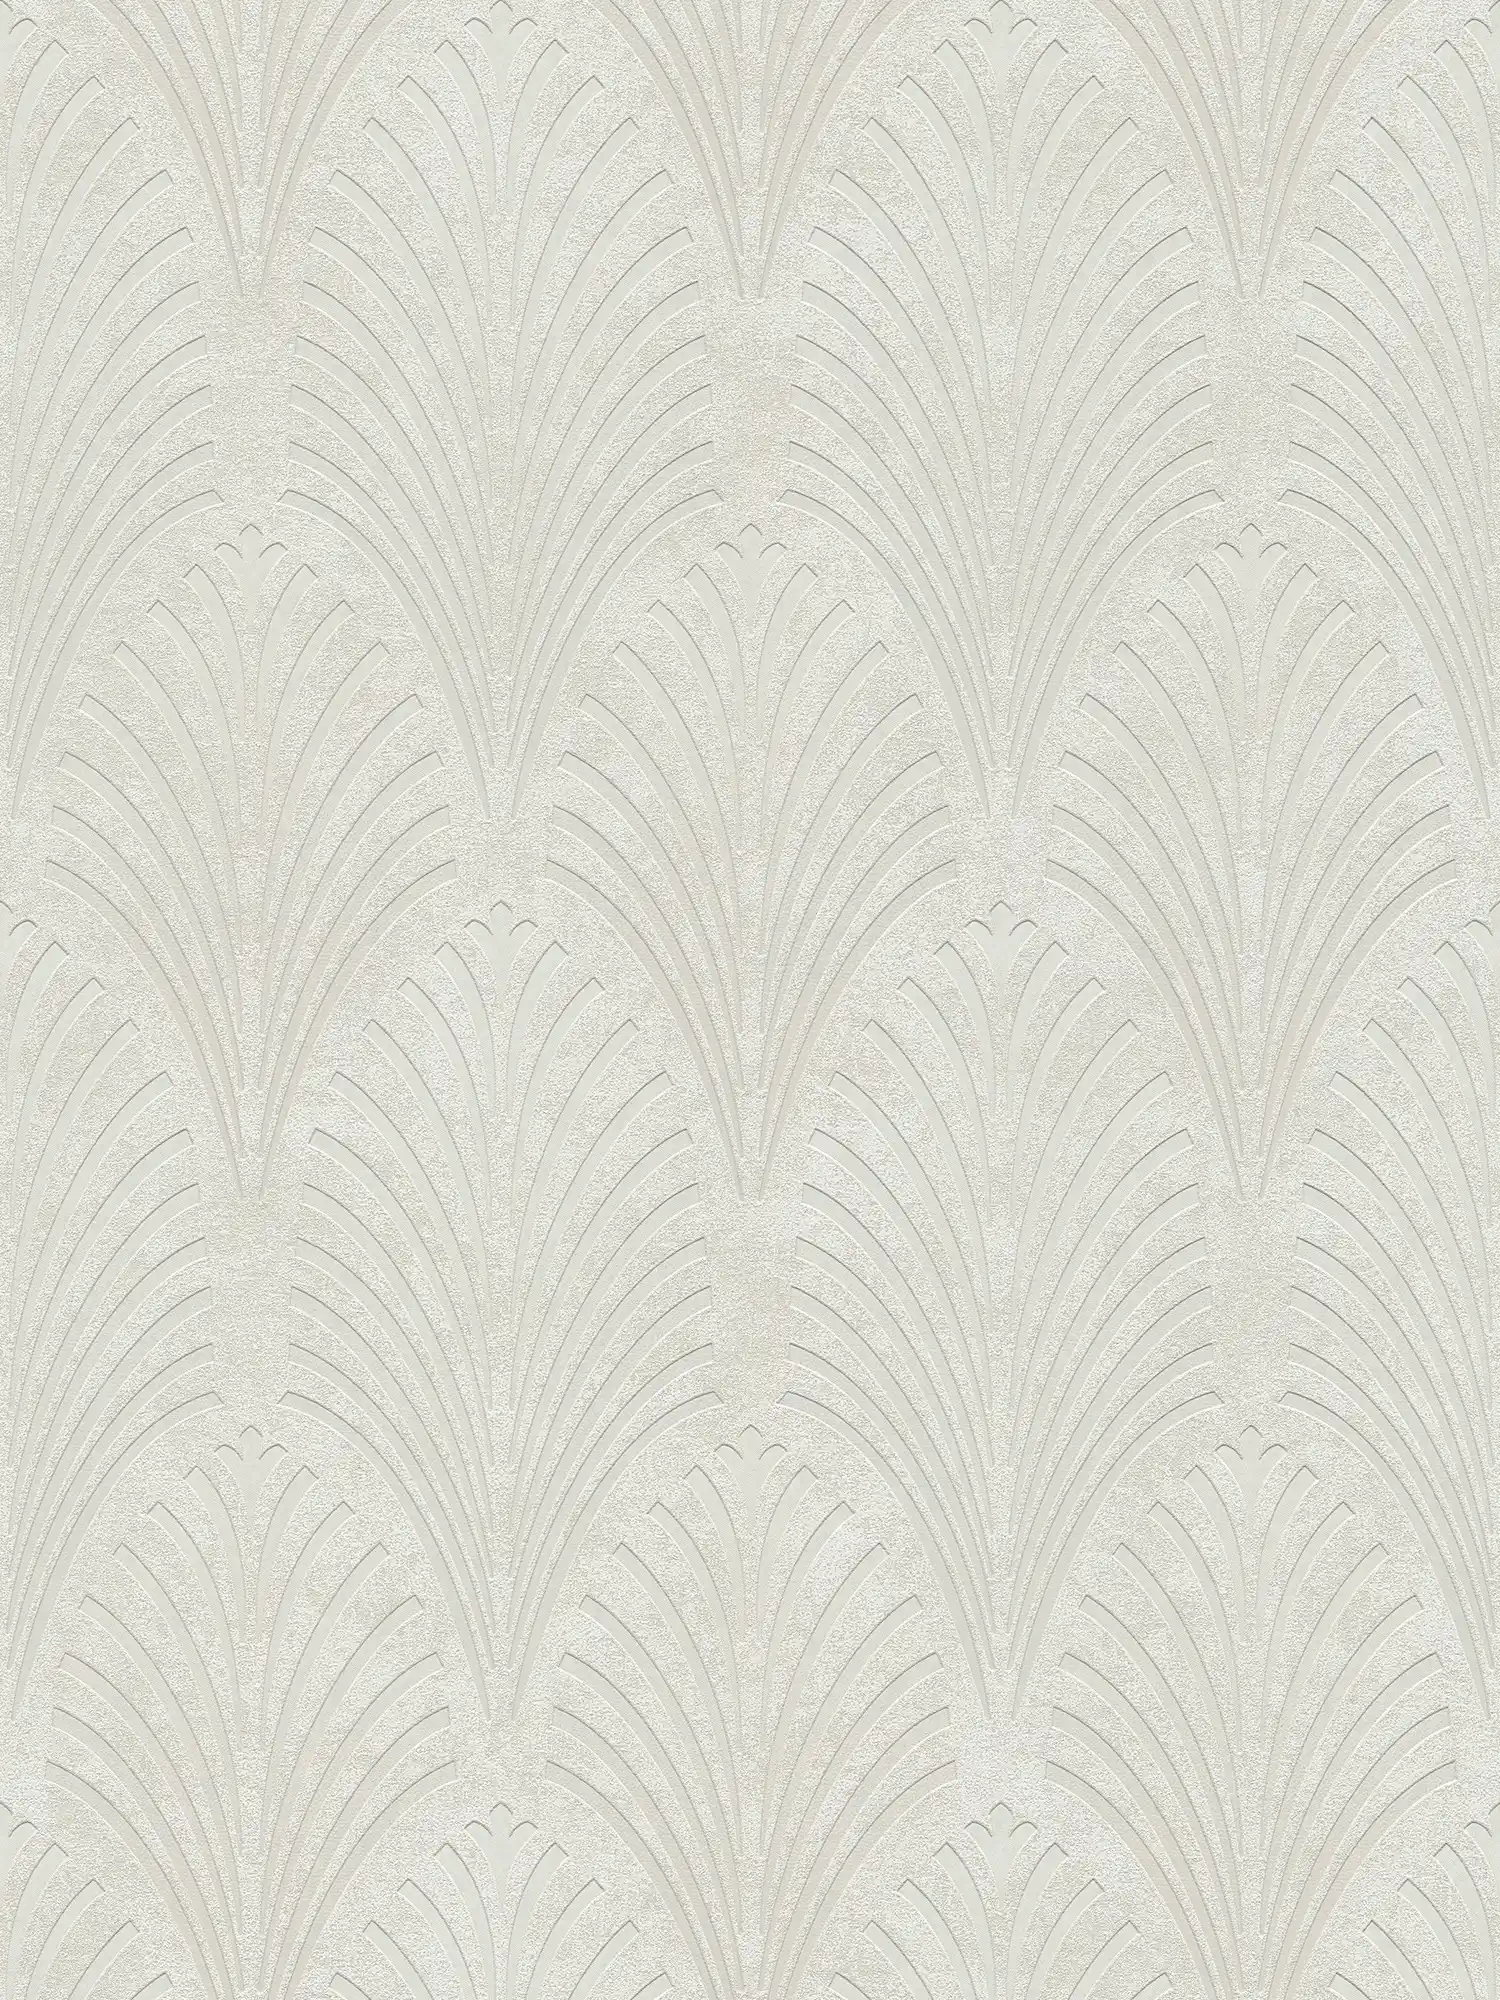 Papel pintado retro estilo Art Deco con motivos geométricos - crema, gris, beige
